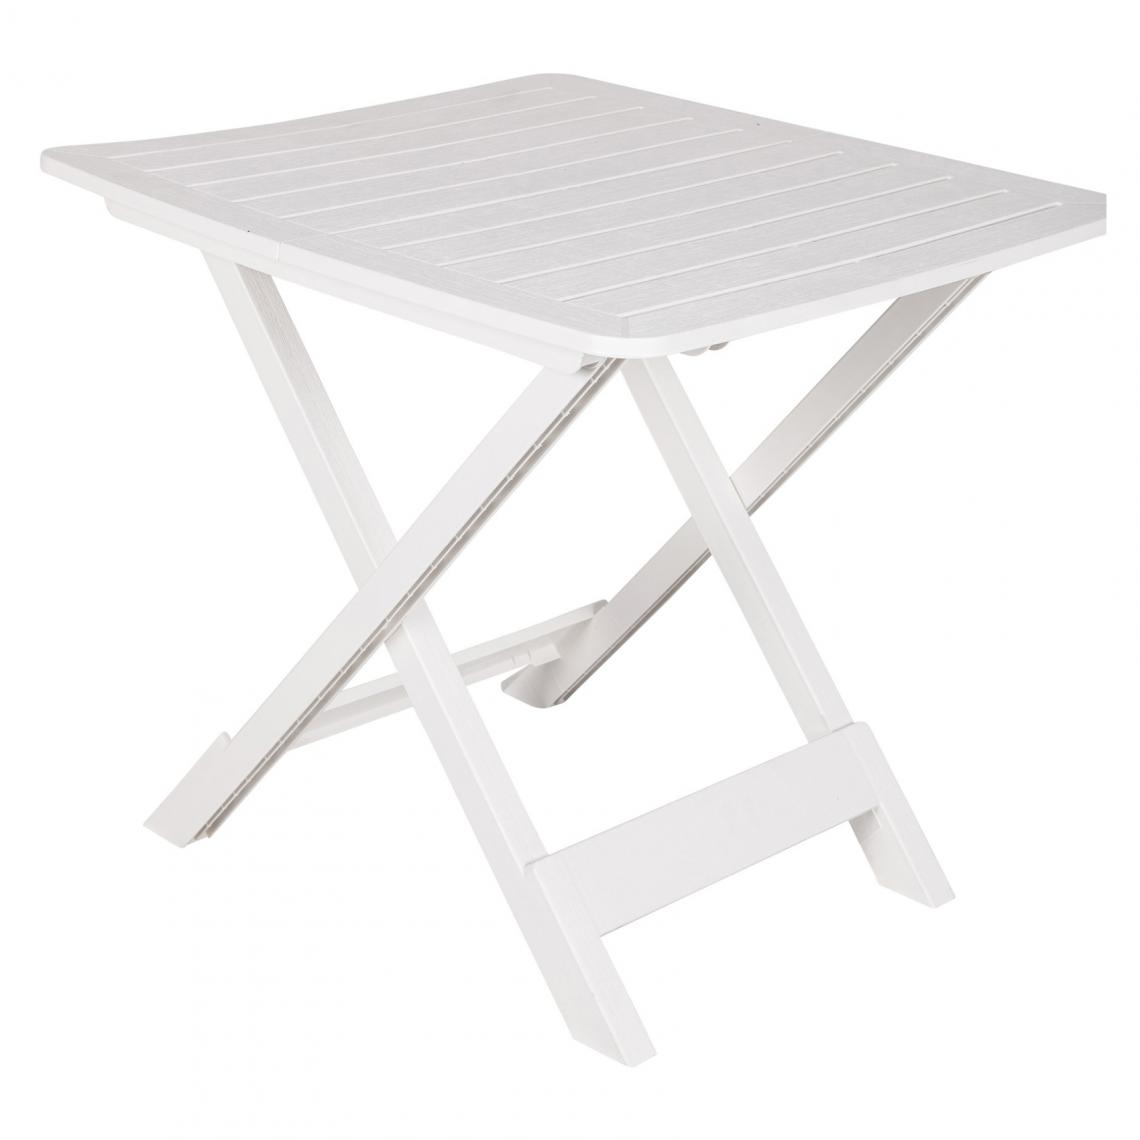 Alter - Table pliante en polypropylène, couleur blanche, Dimensions 72 x 70 x 80 cm - Tables à manger